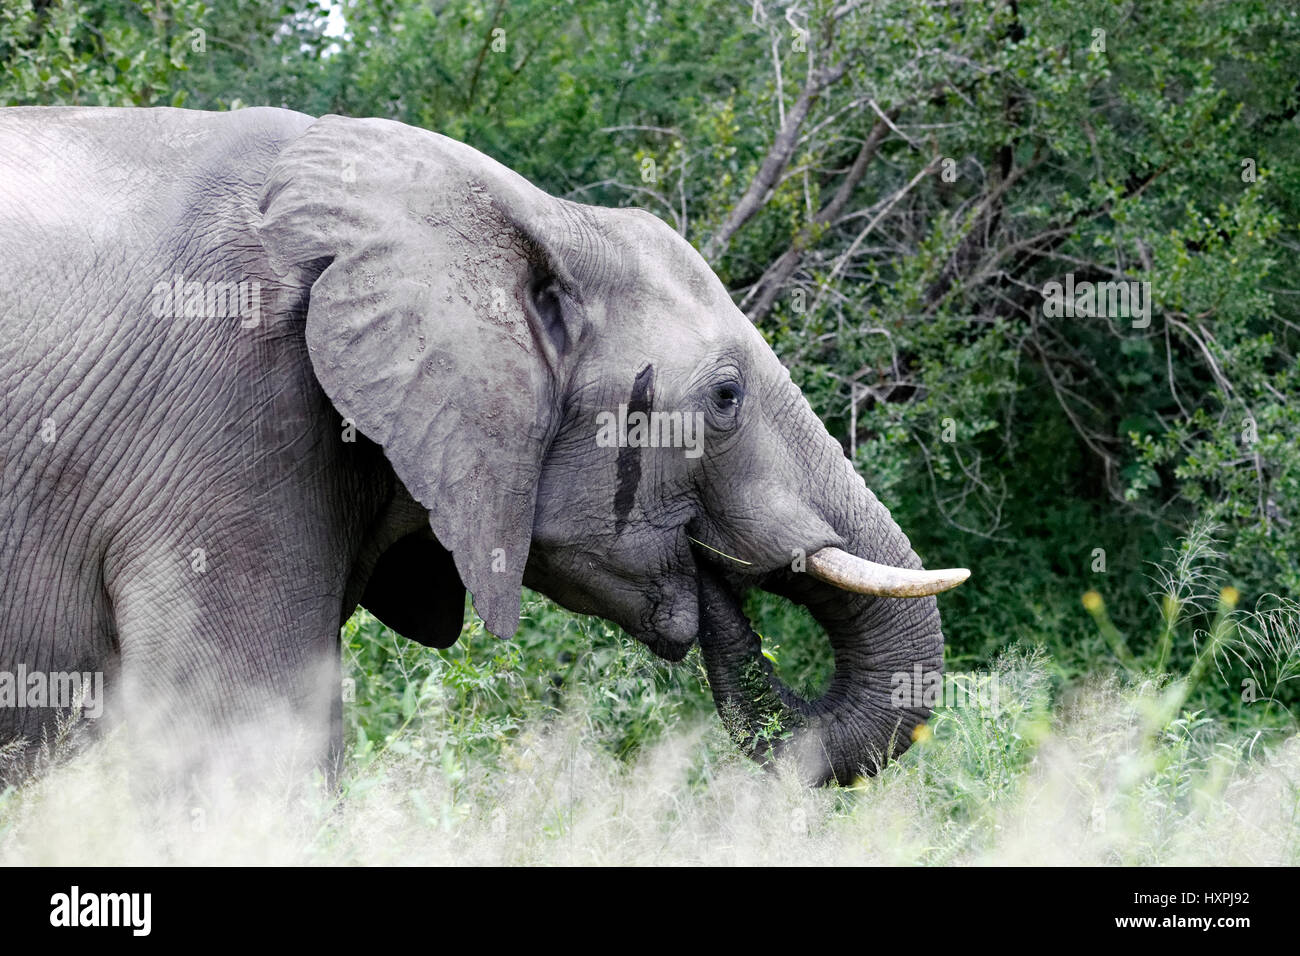 Retrato del elefante africano (Loxodonta africana) con la secreción de la glándula temporal, el Parque Nacional Kruger, Sudáfrica Foto de stock